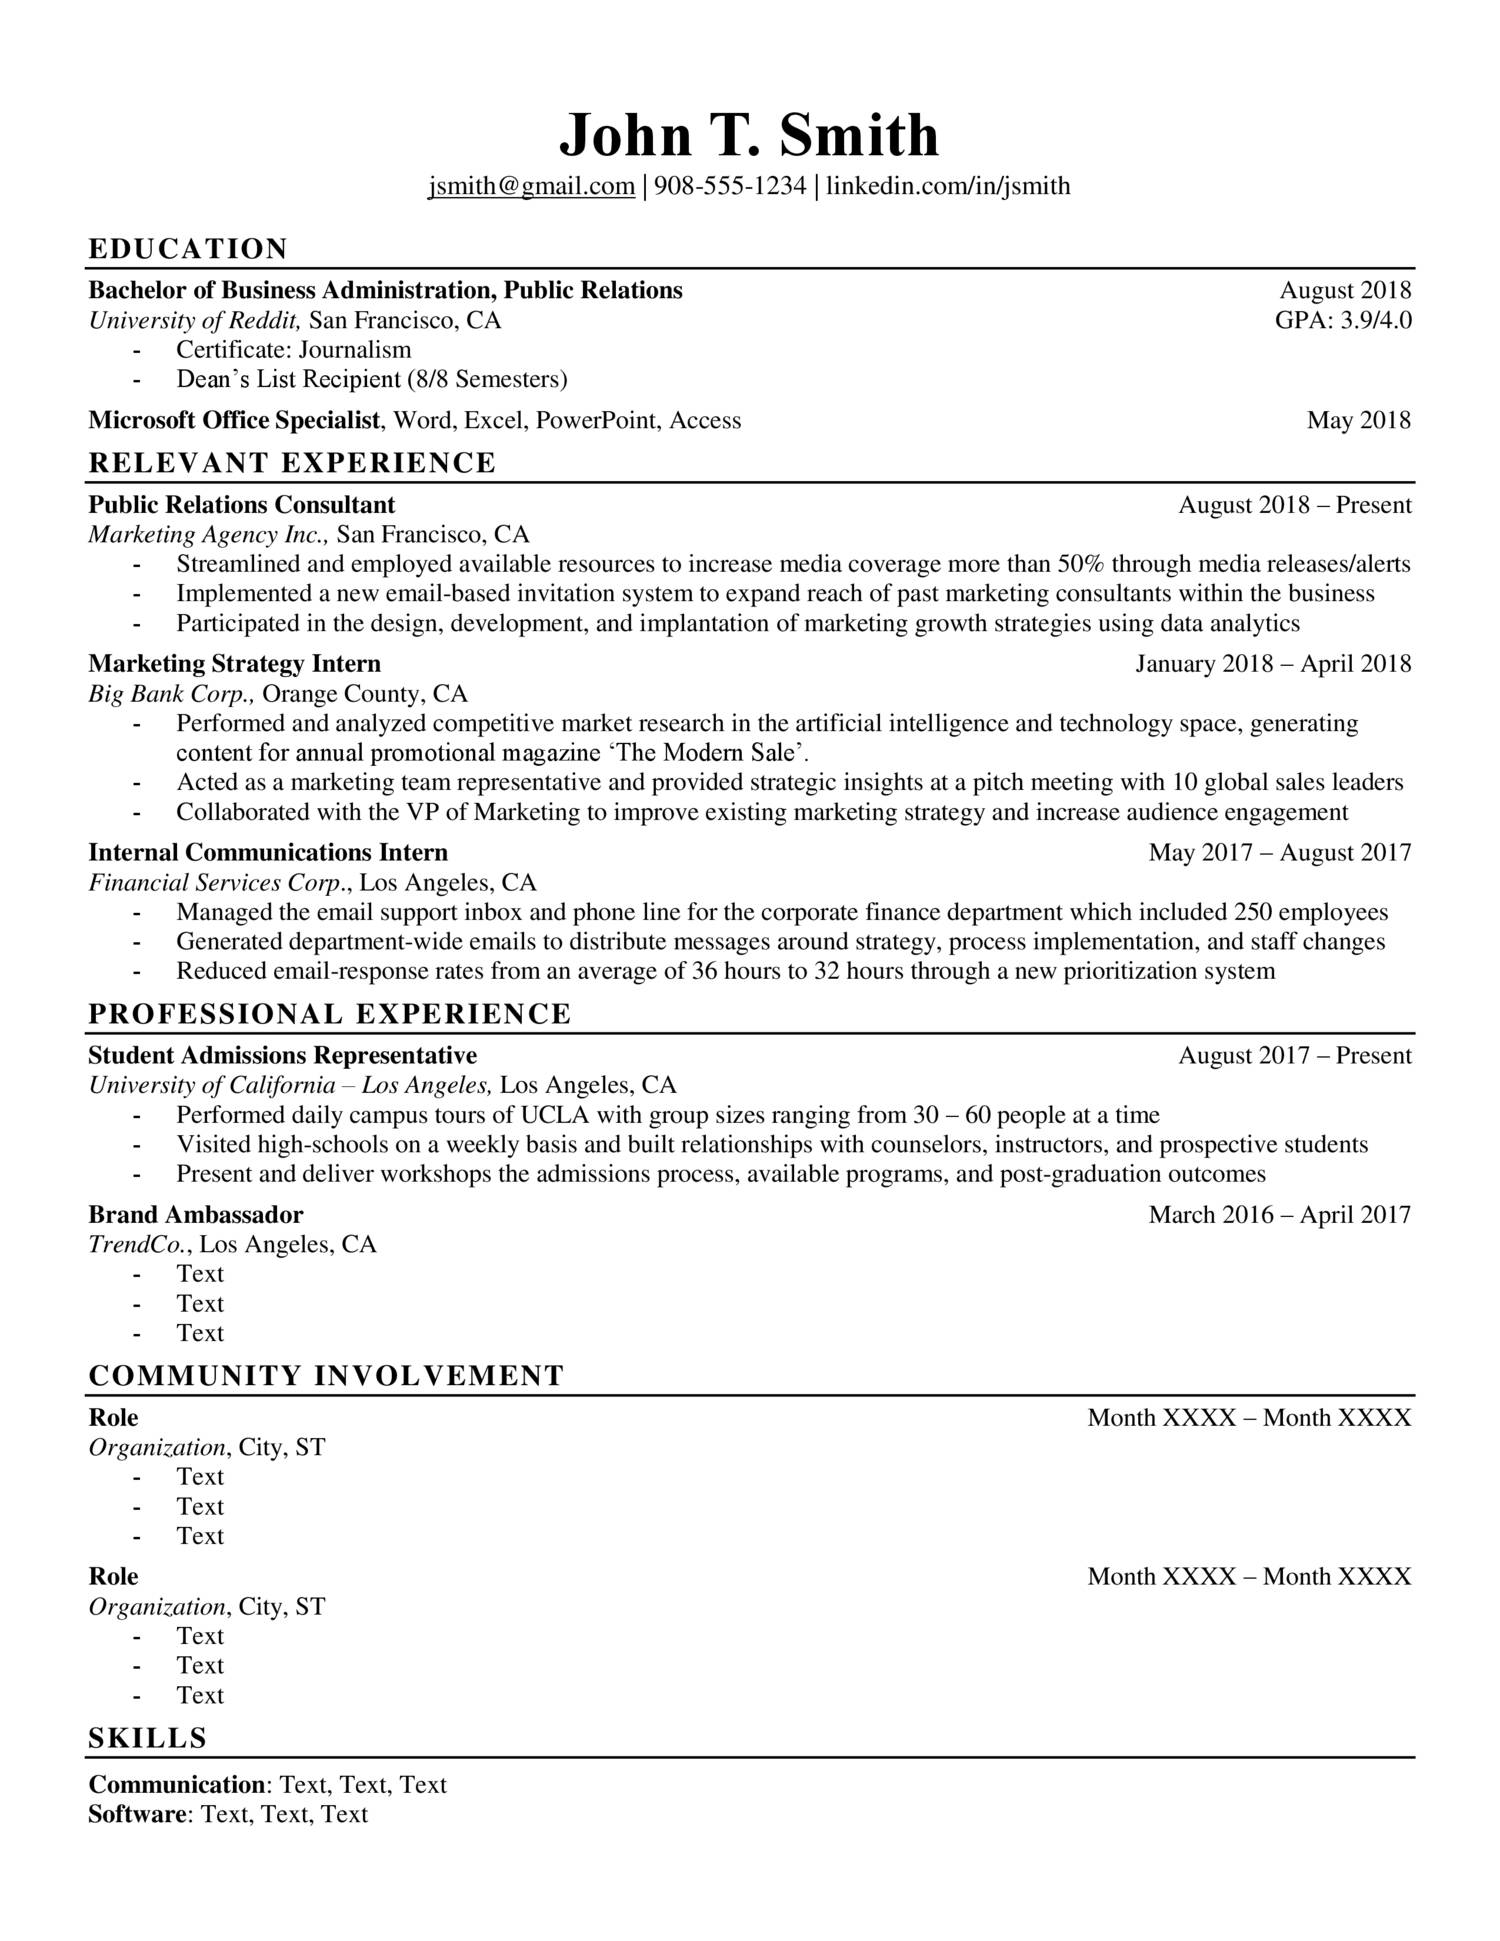 Example Resume.docx | DocDroid